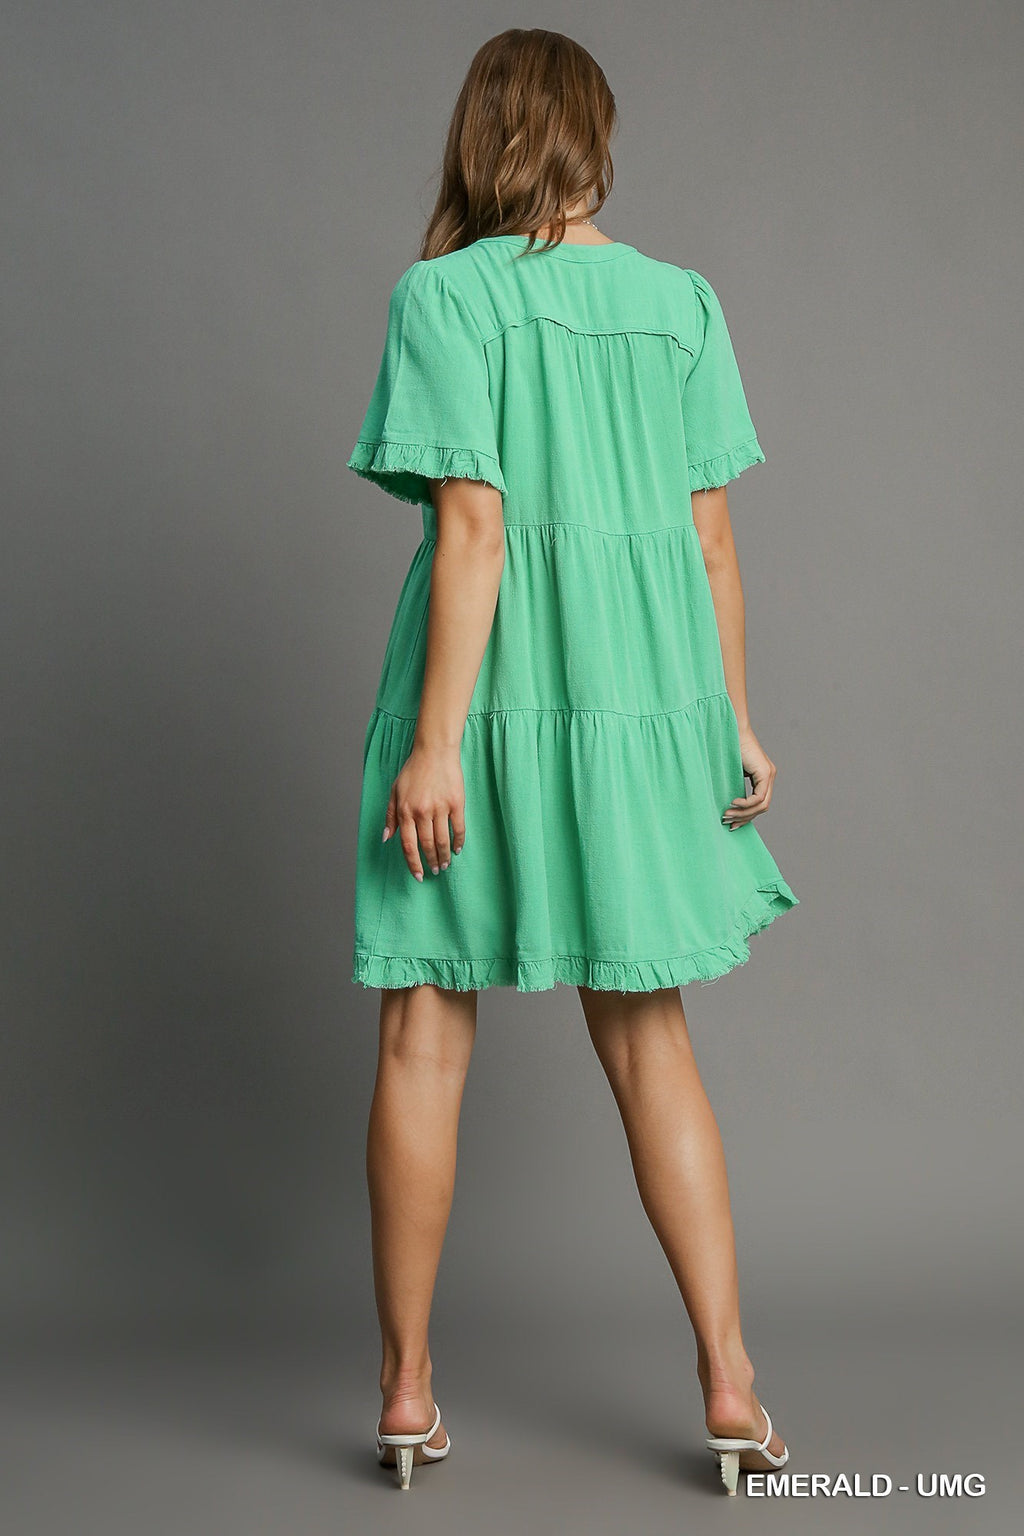 "Tracine" Linen Blend Dress, 2 colors - The Katie Grace Boutique